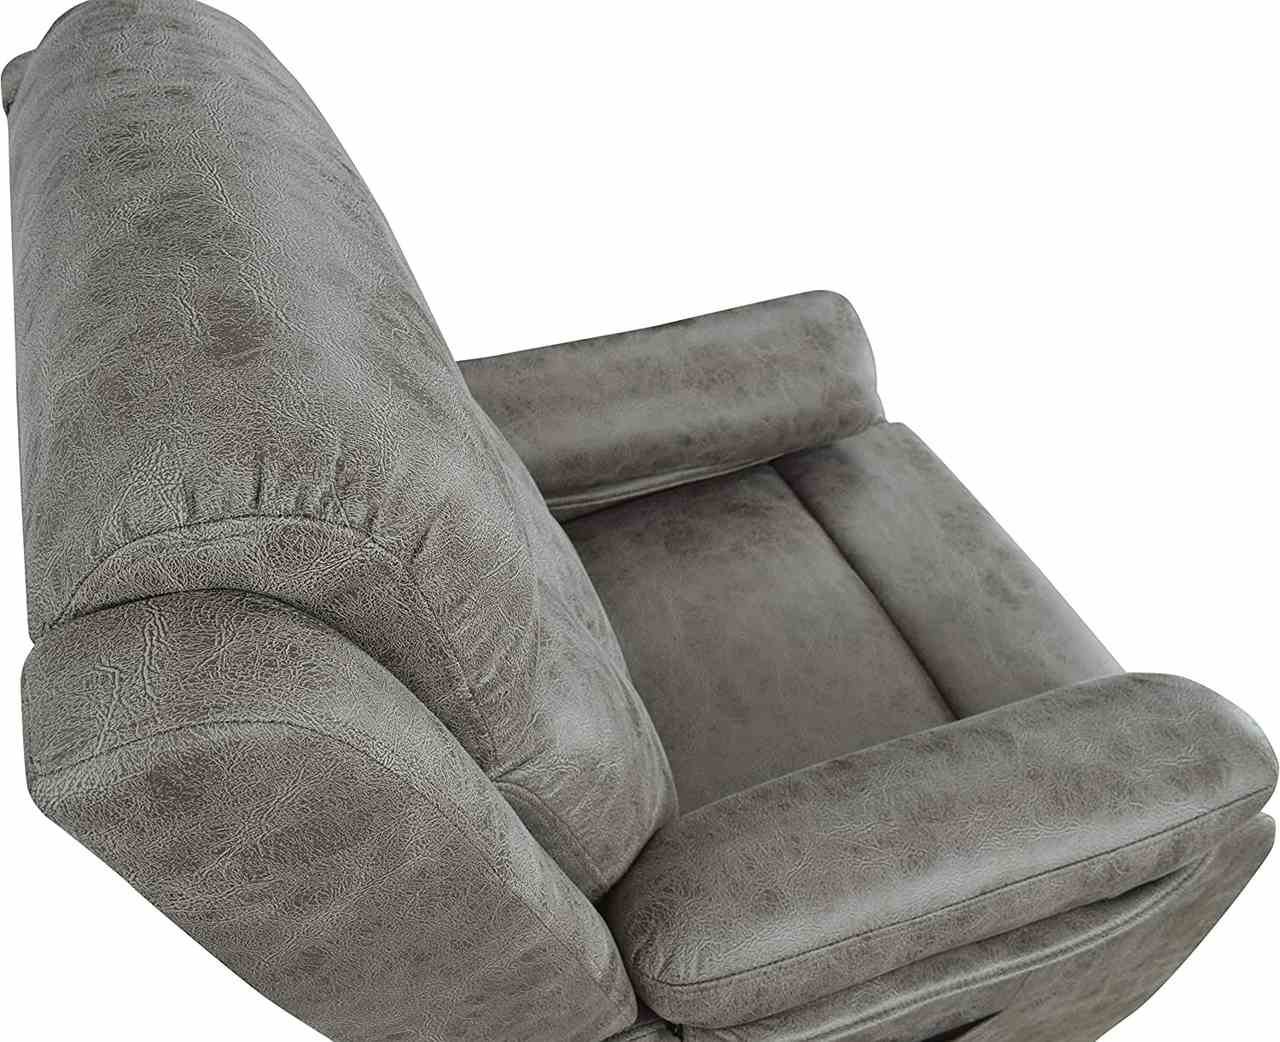 Sillón estrecho relax, sillón reclinable estrecho, sillon geriátrico  estrecho